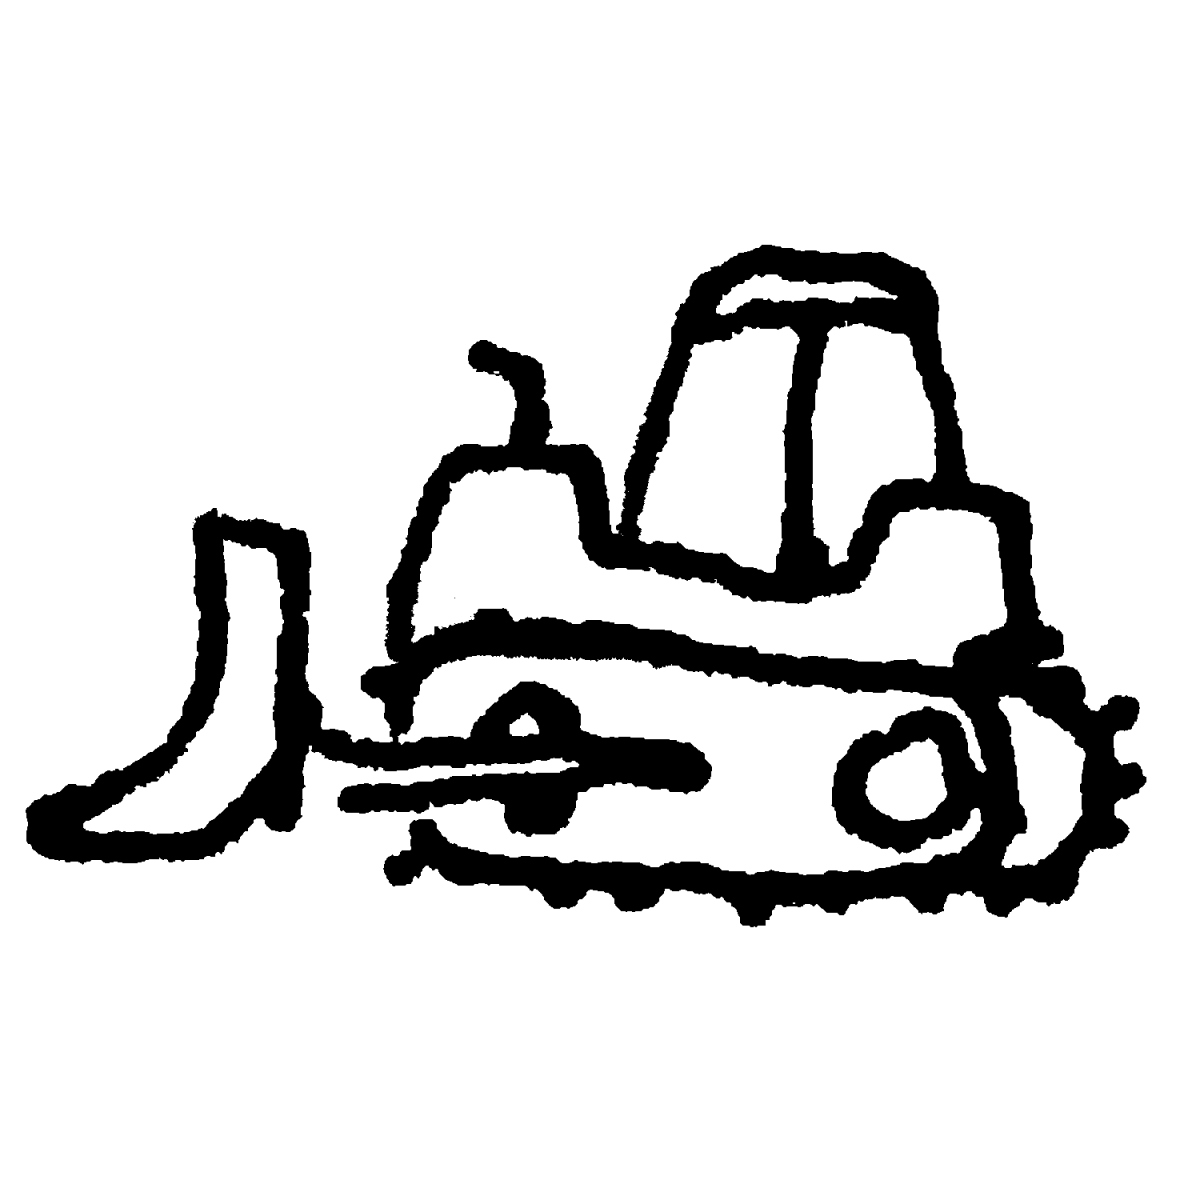 ブルドーザーのイラスト / bulldozer Illustration